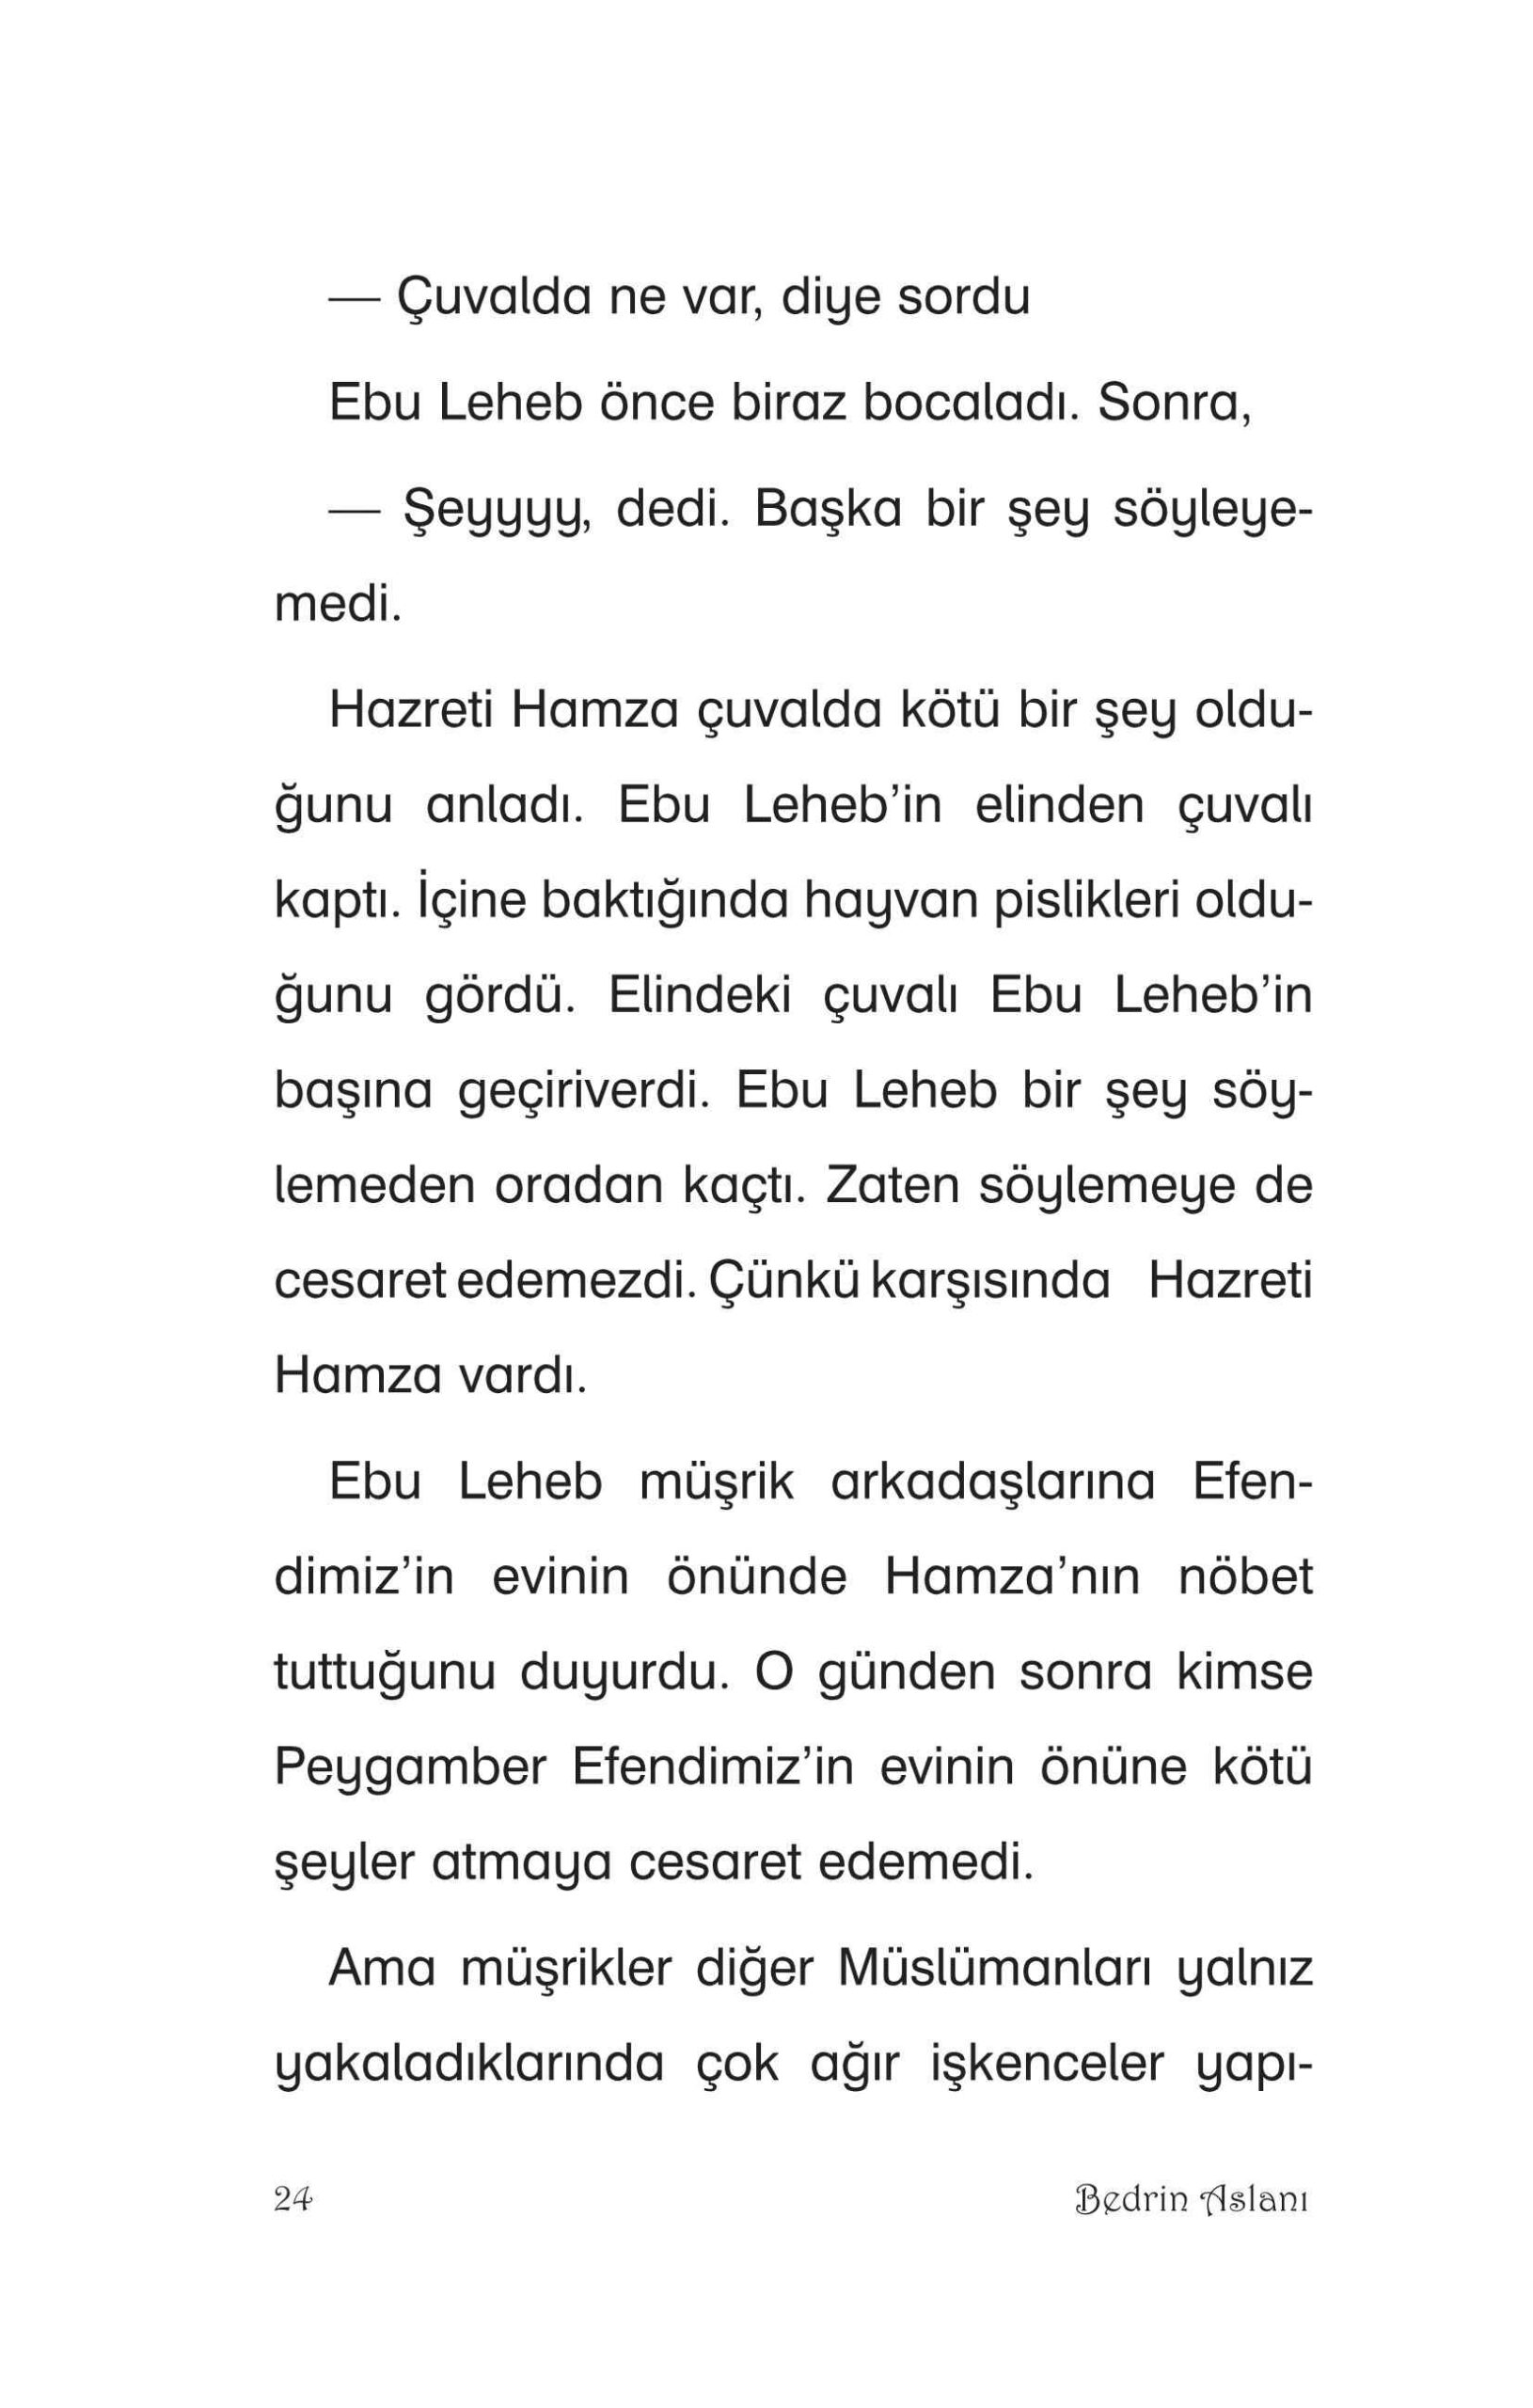 Sevgili Peygamberimizin Arkadaslari-08 - Enis Yuce - Bedrin Arslani Hazreti Hamza - IsikYayinlari.pdf, 59-Sayfa 